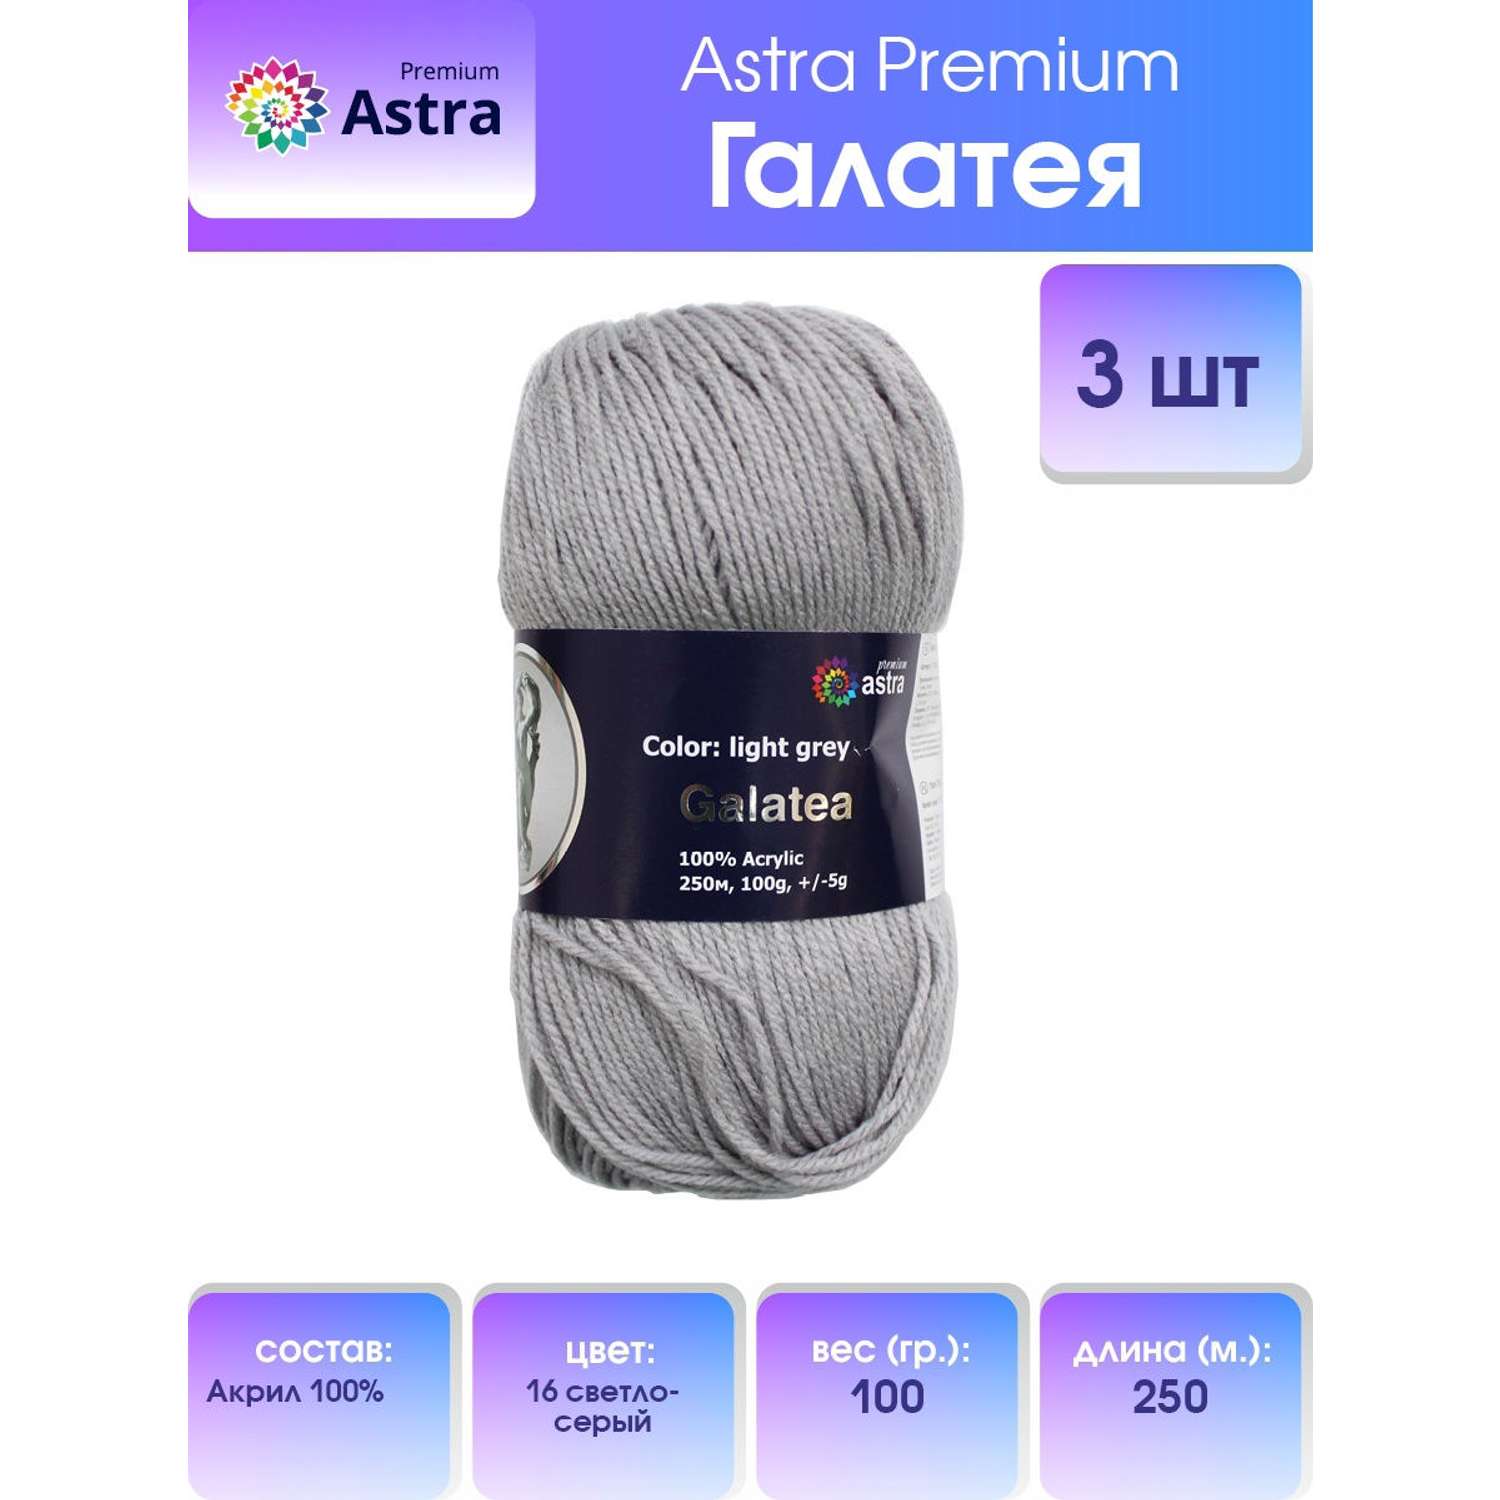 Пряжа Astra Premium Галатея акриловая 100 г 250 м 16 светло-серый 3 мотка - фото 1